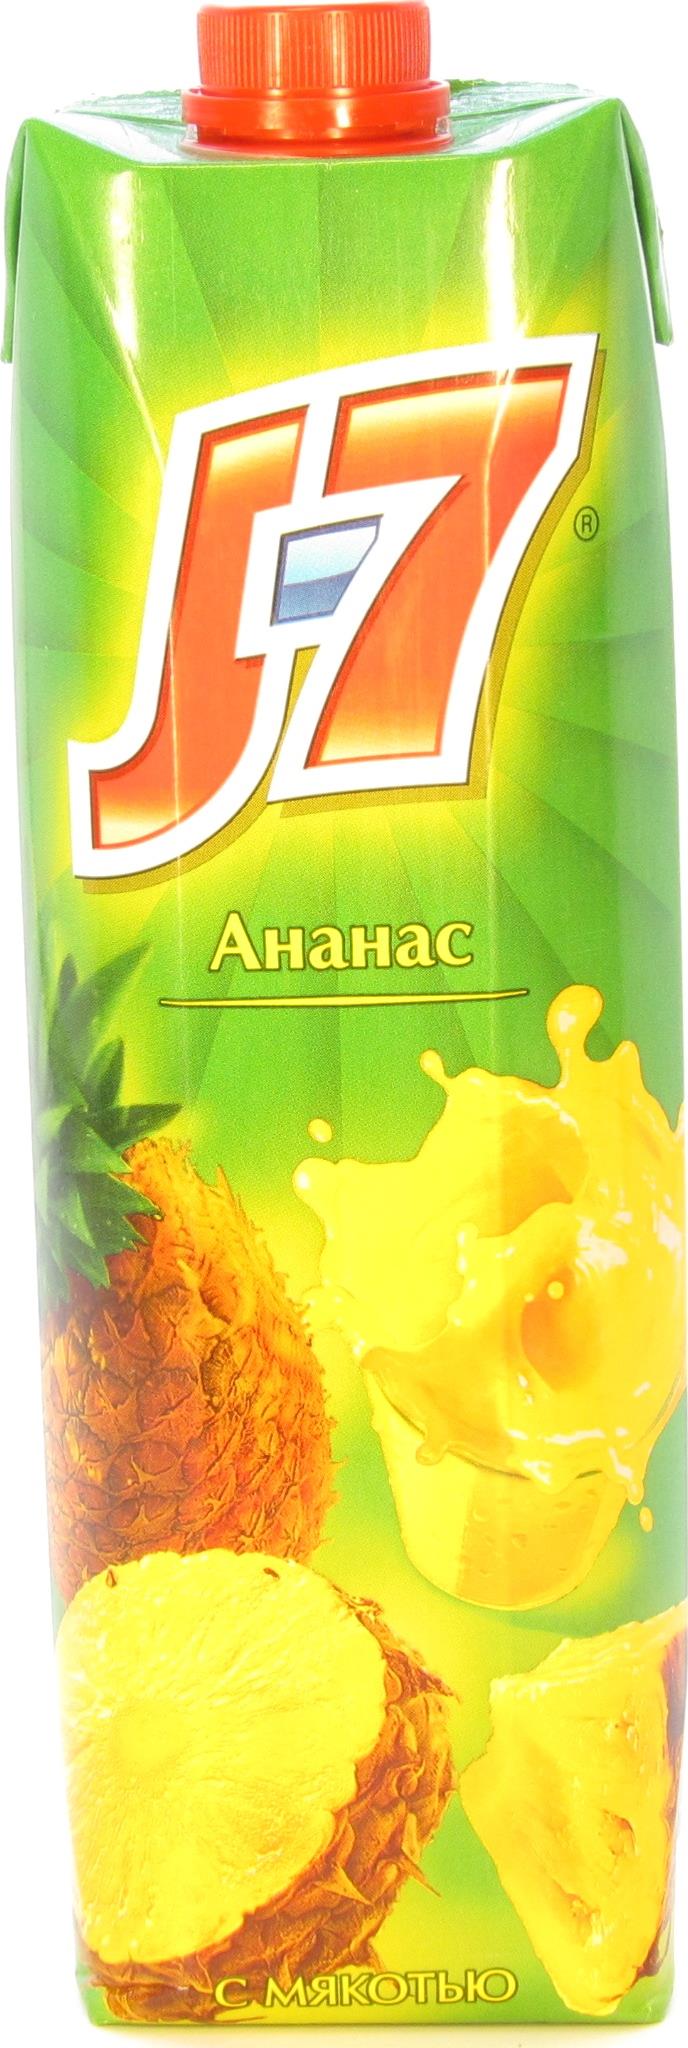 Нектар J7 Призма ананас